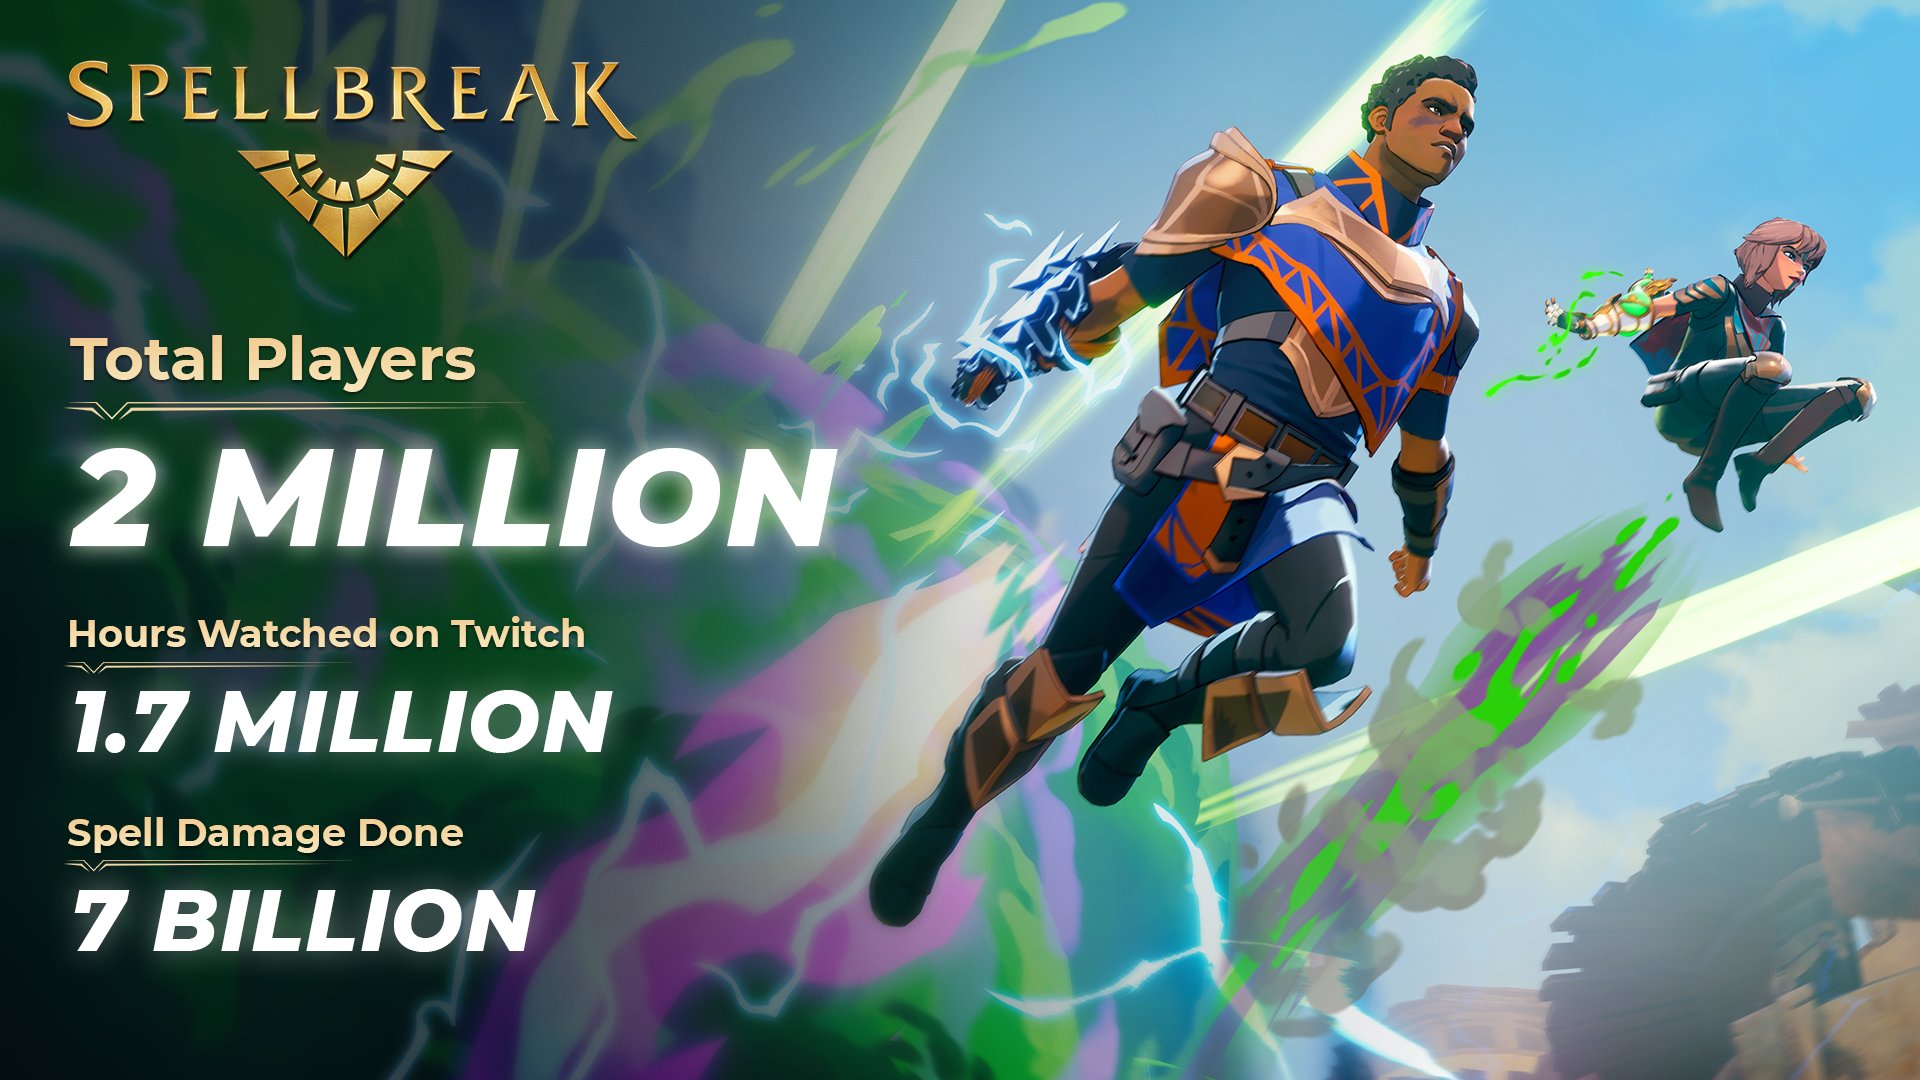 免費魔法吃雞遊戲《Spellbreak》累計玩家達200萬